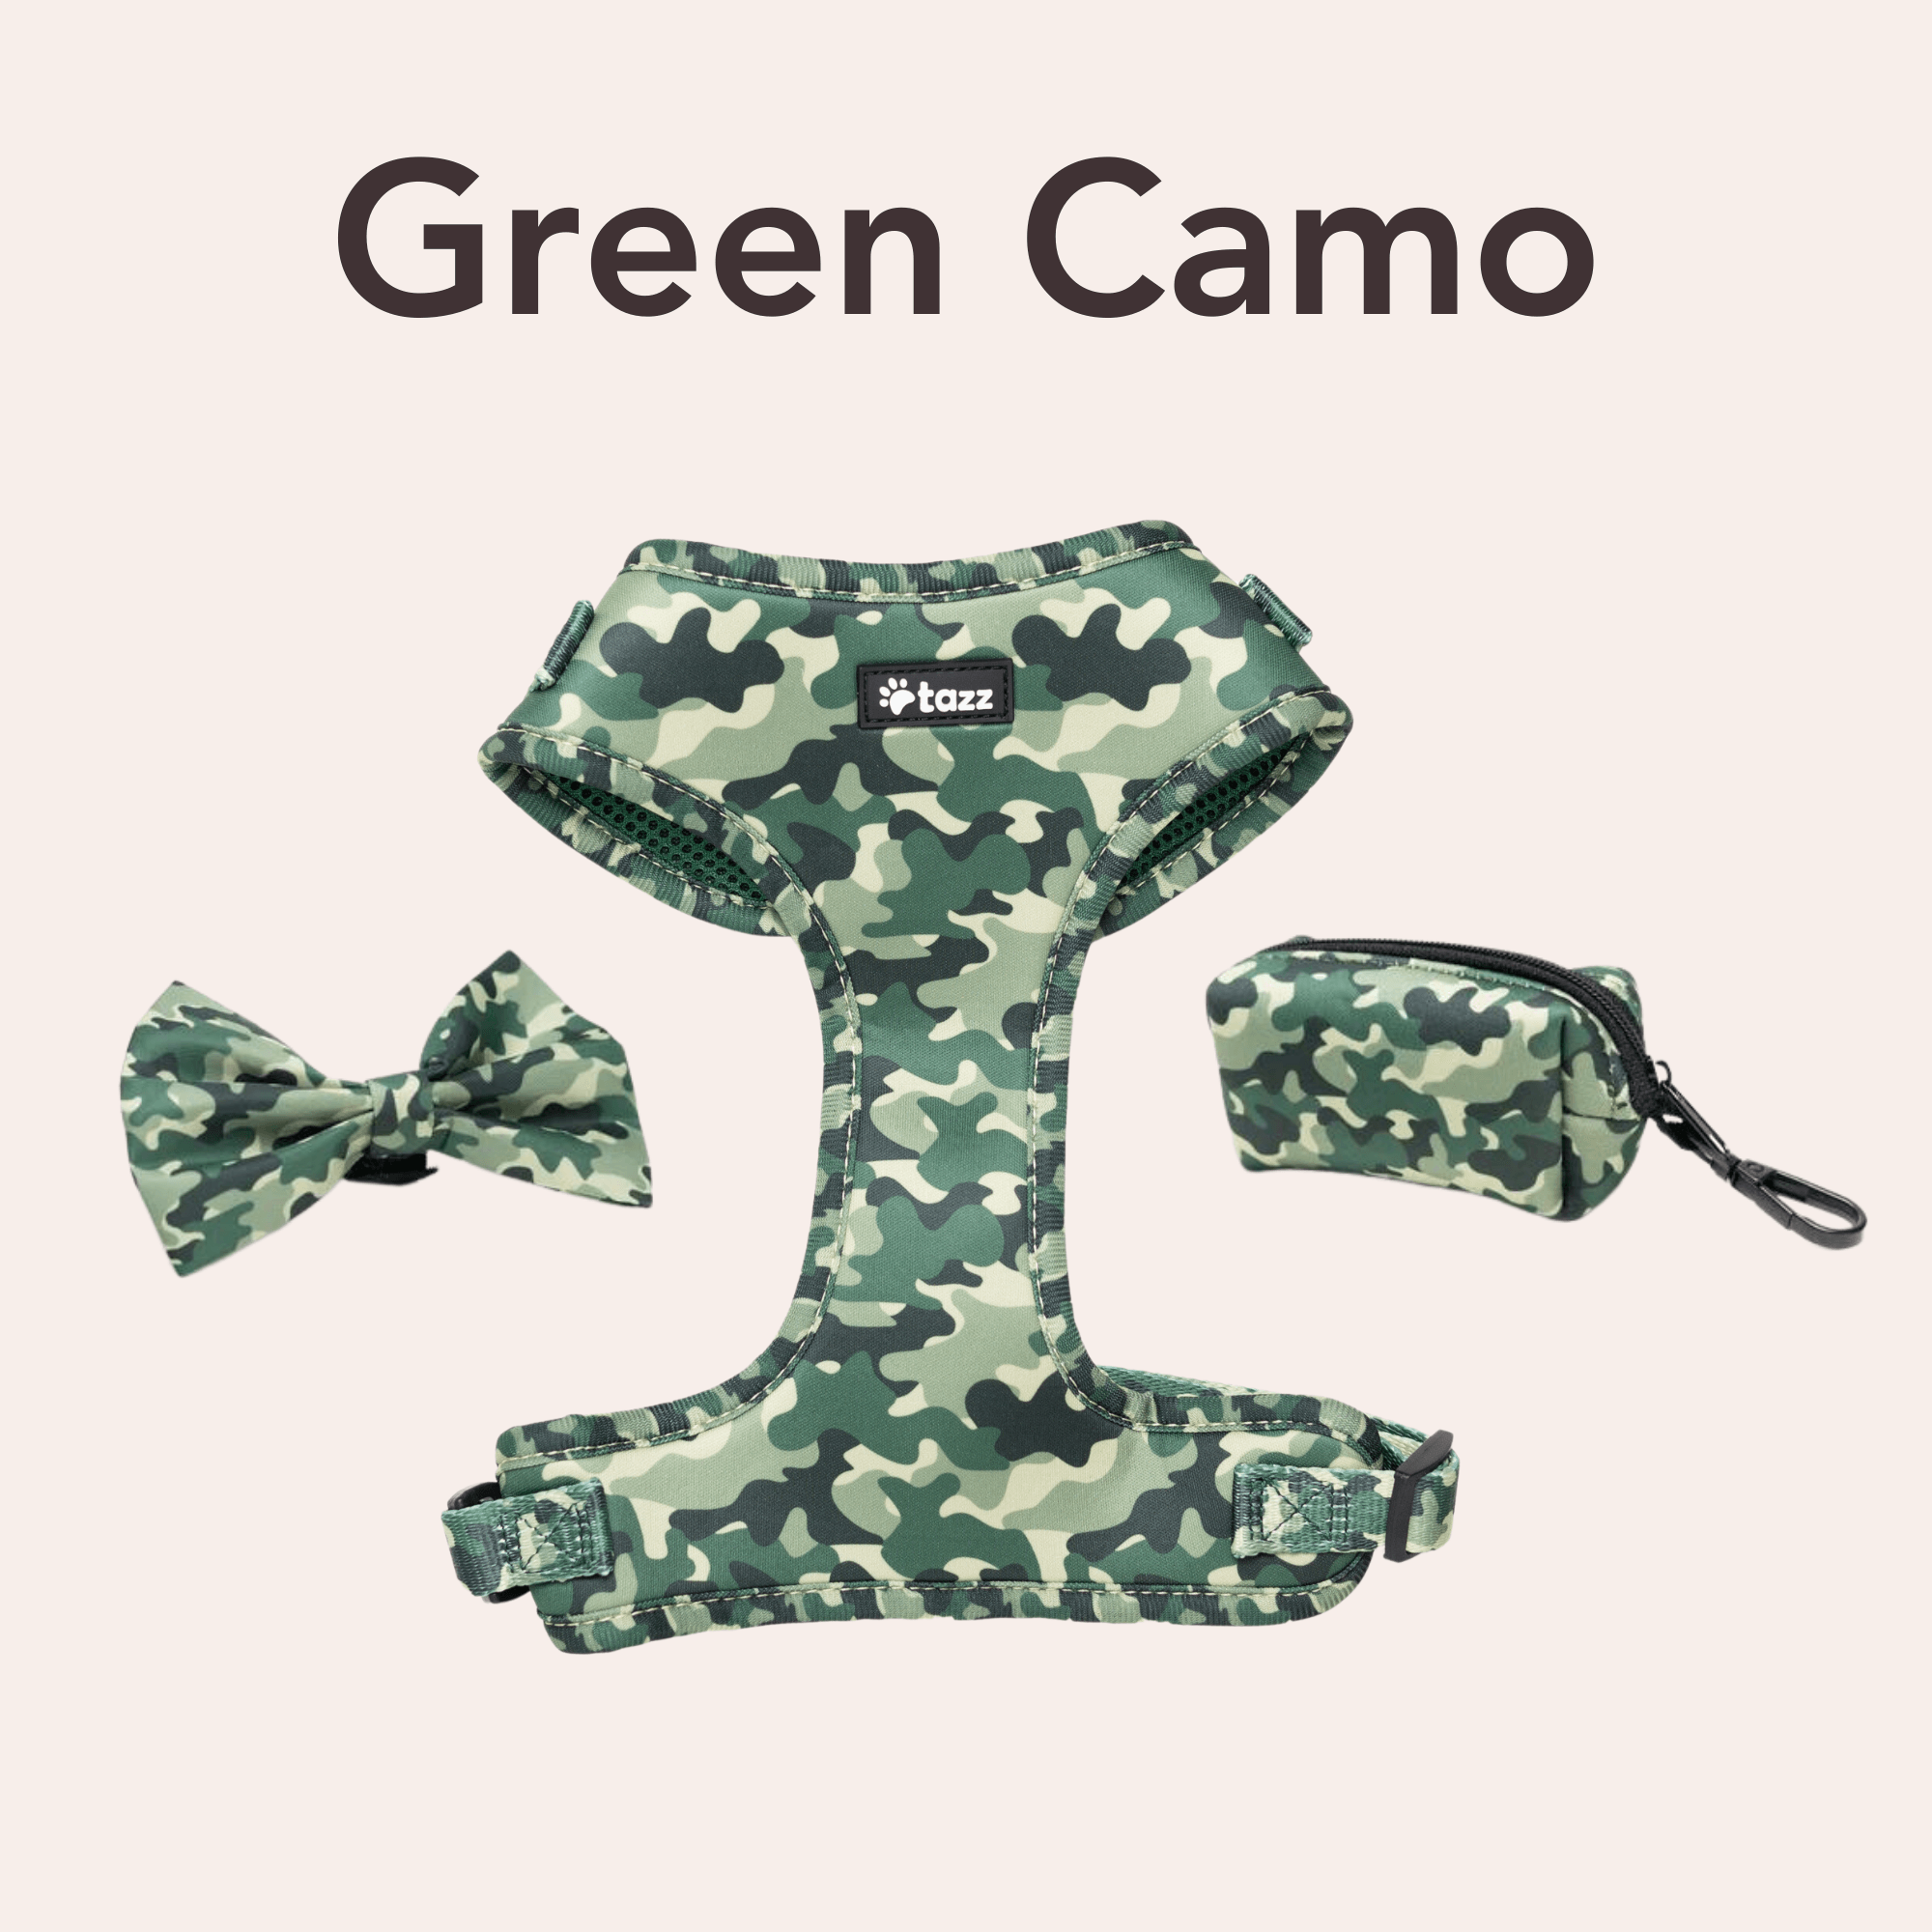 Green Camo - Tazz